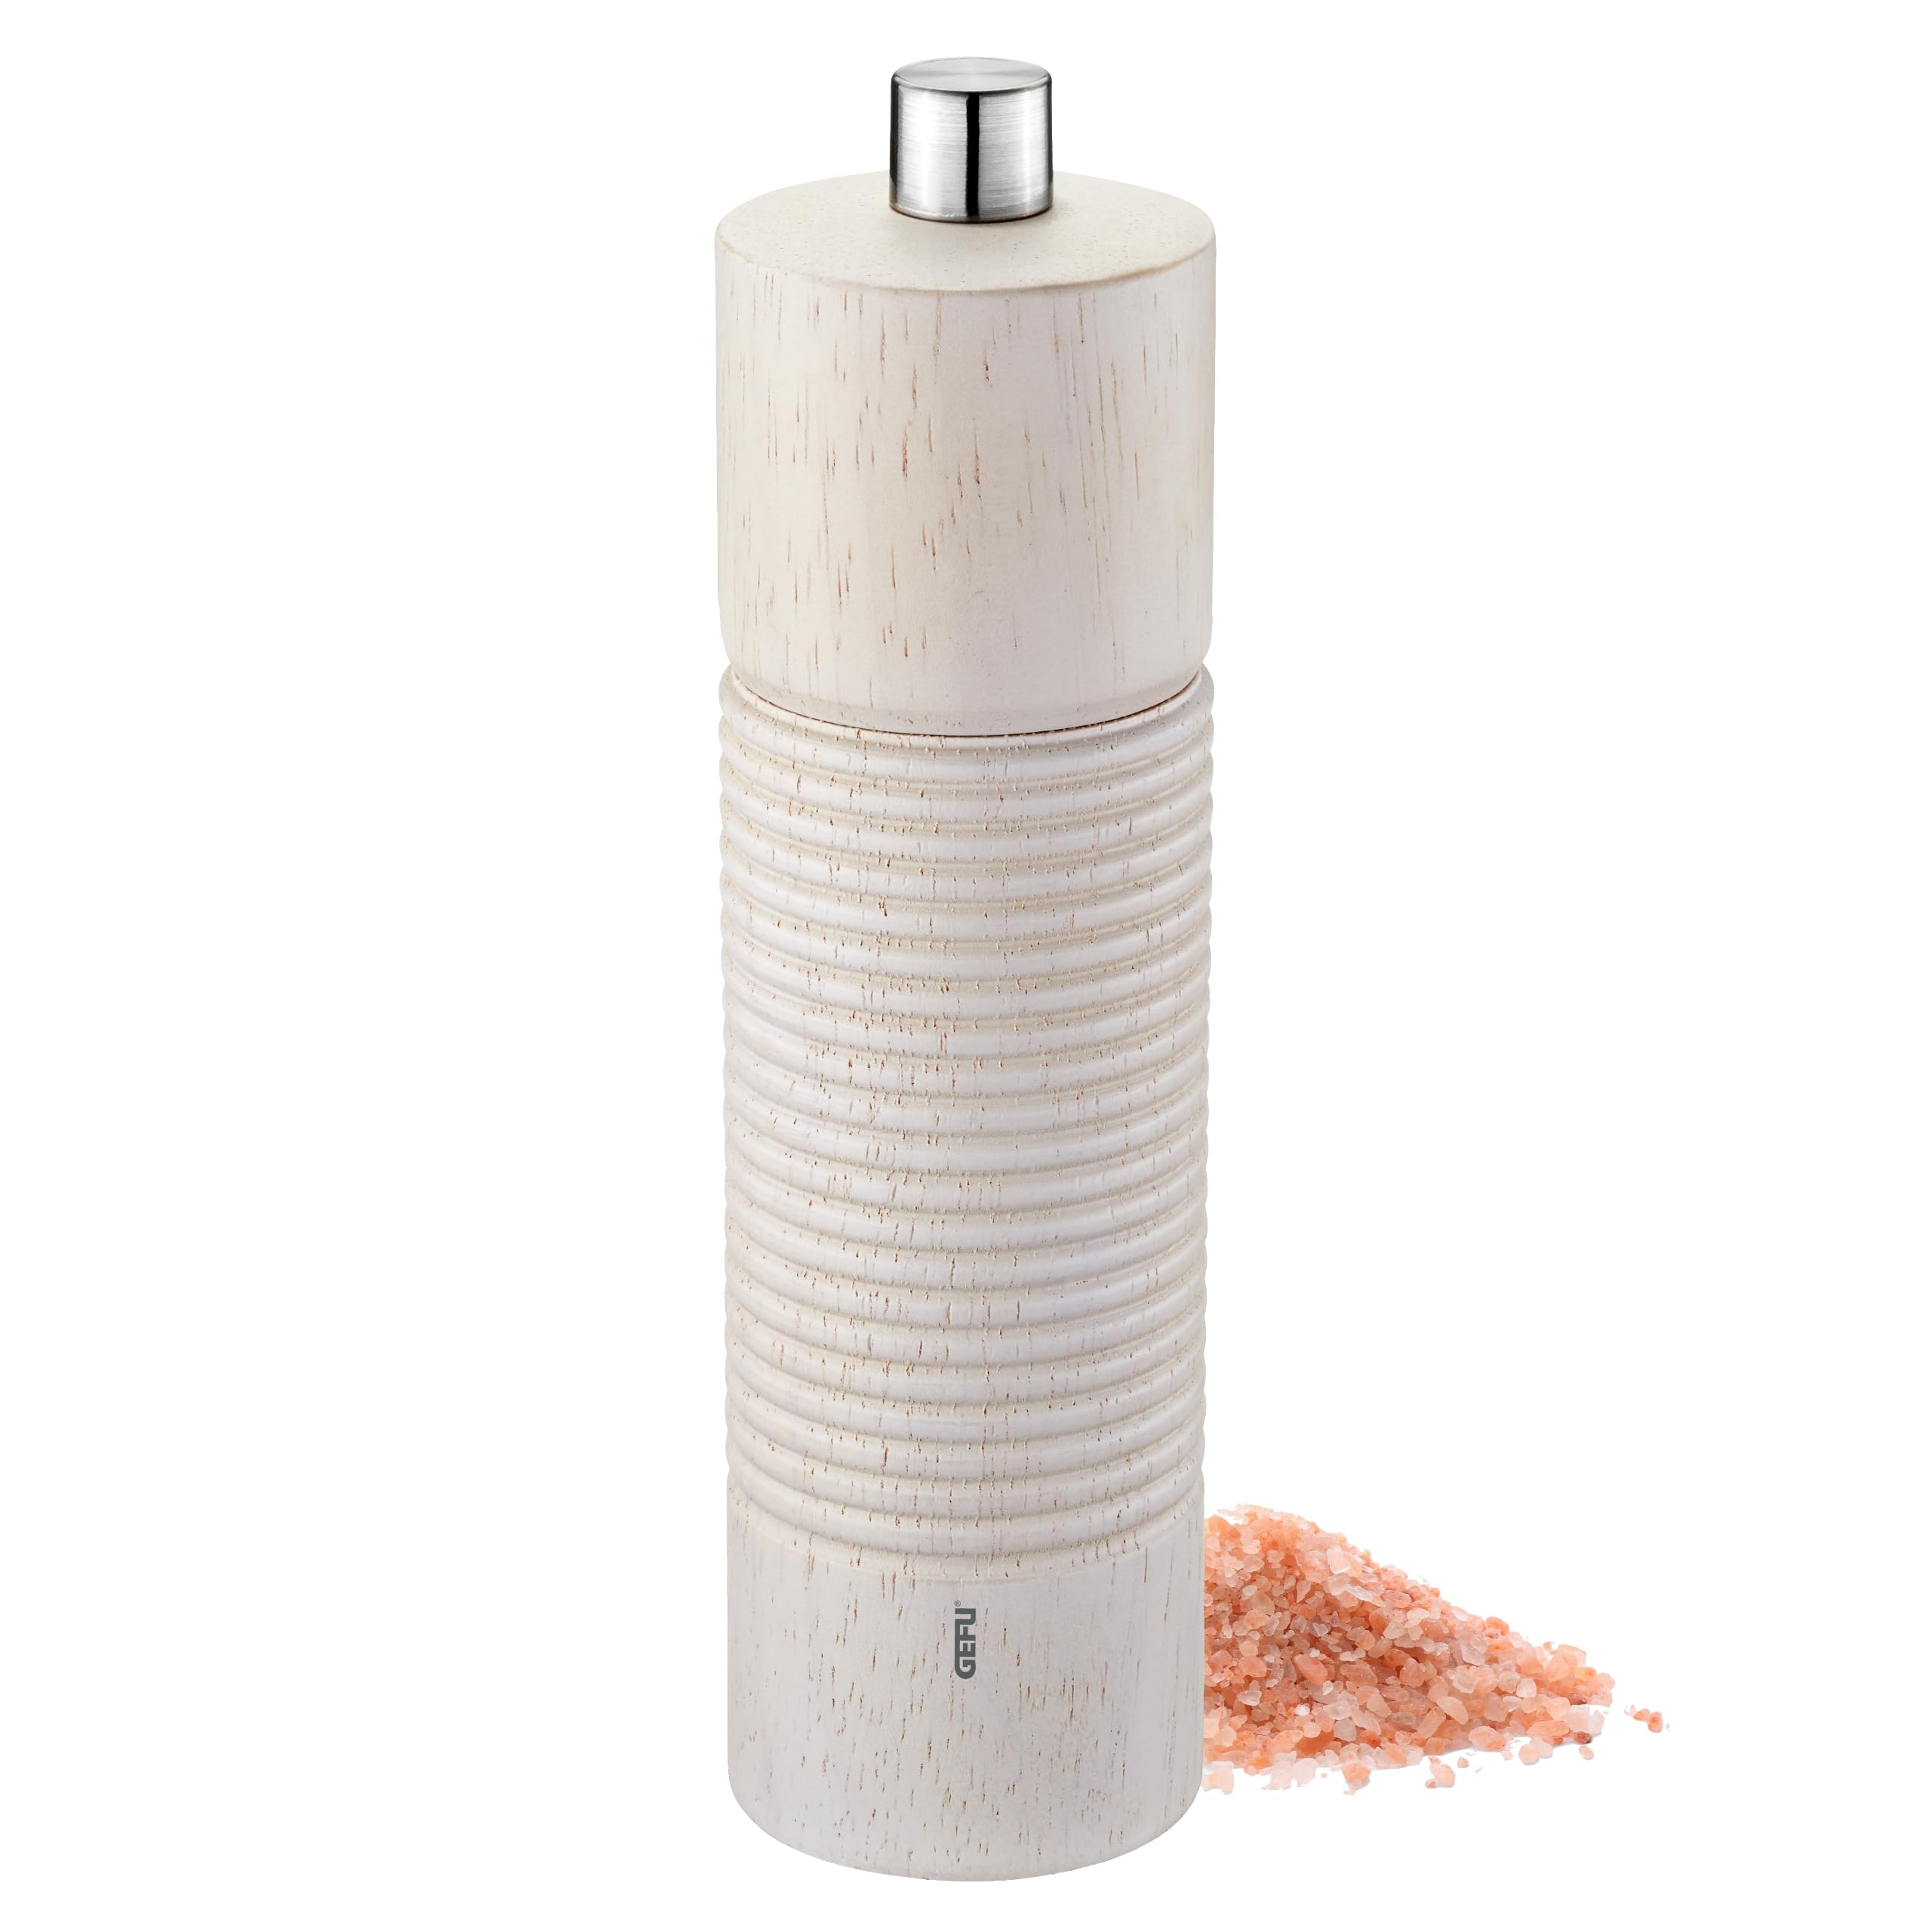 GEFU Salz- oder Pfeffermühle Tedoro - Manuelle Gewürzmühle - Unbefüllt - Verstellbares Keramikmahlwerk - Höhe 18 cm - Weiß